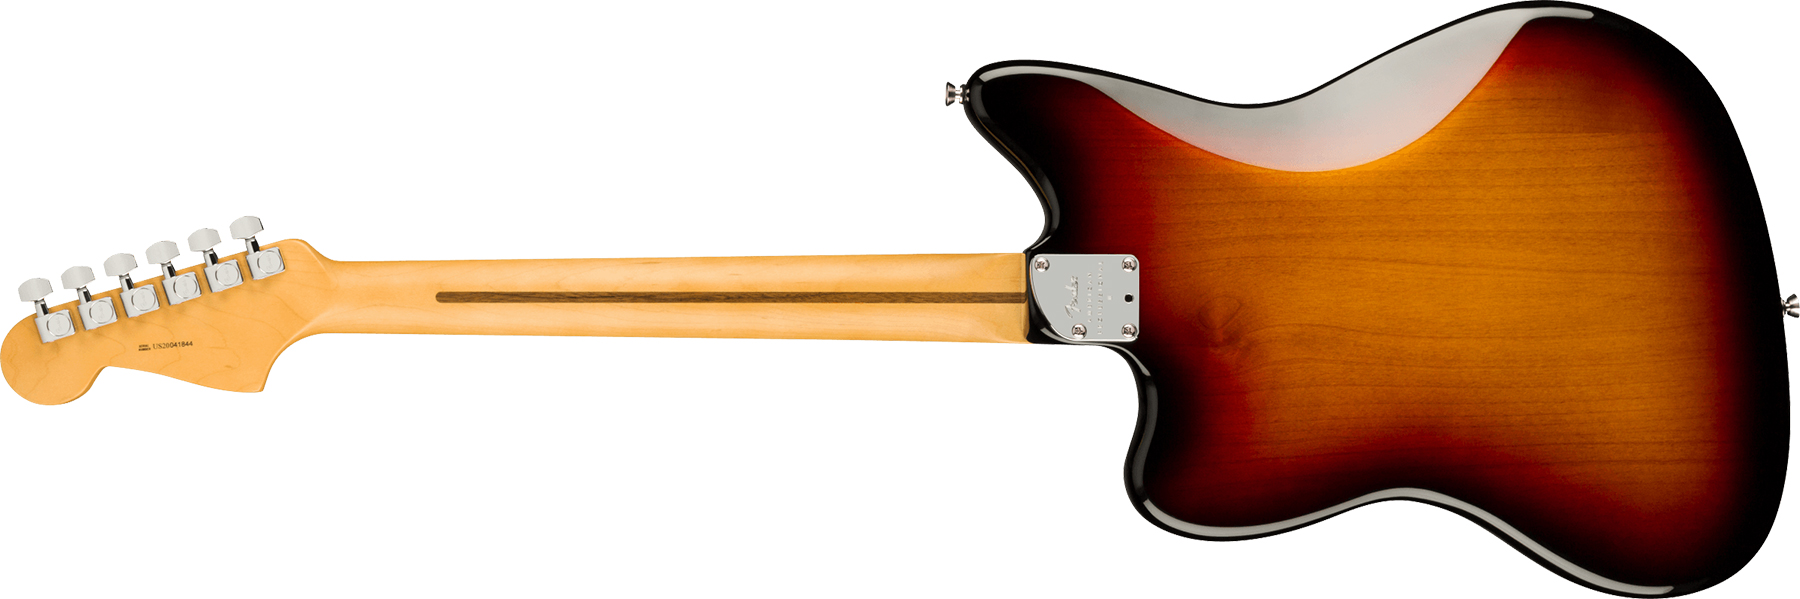 Fender Jazzmaster American Professional Ii Lh Gaucher Usa Rw - 3-color Sunburst - Guitarra electrica para zurdos - Variation 1